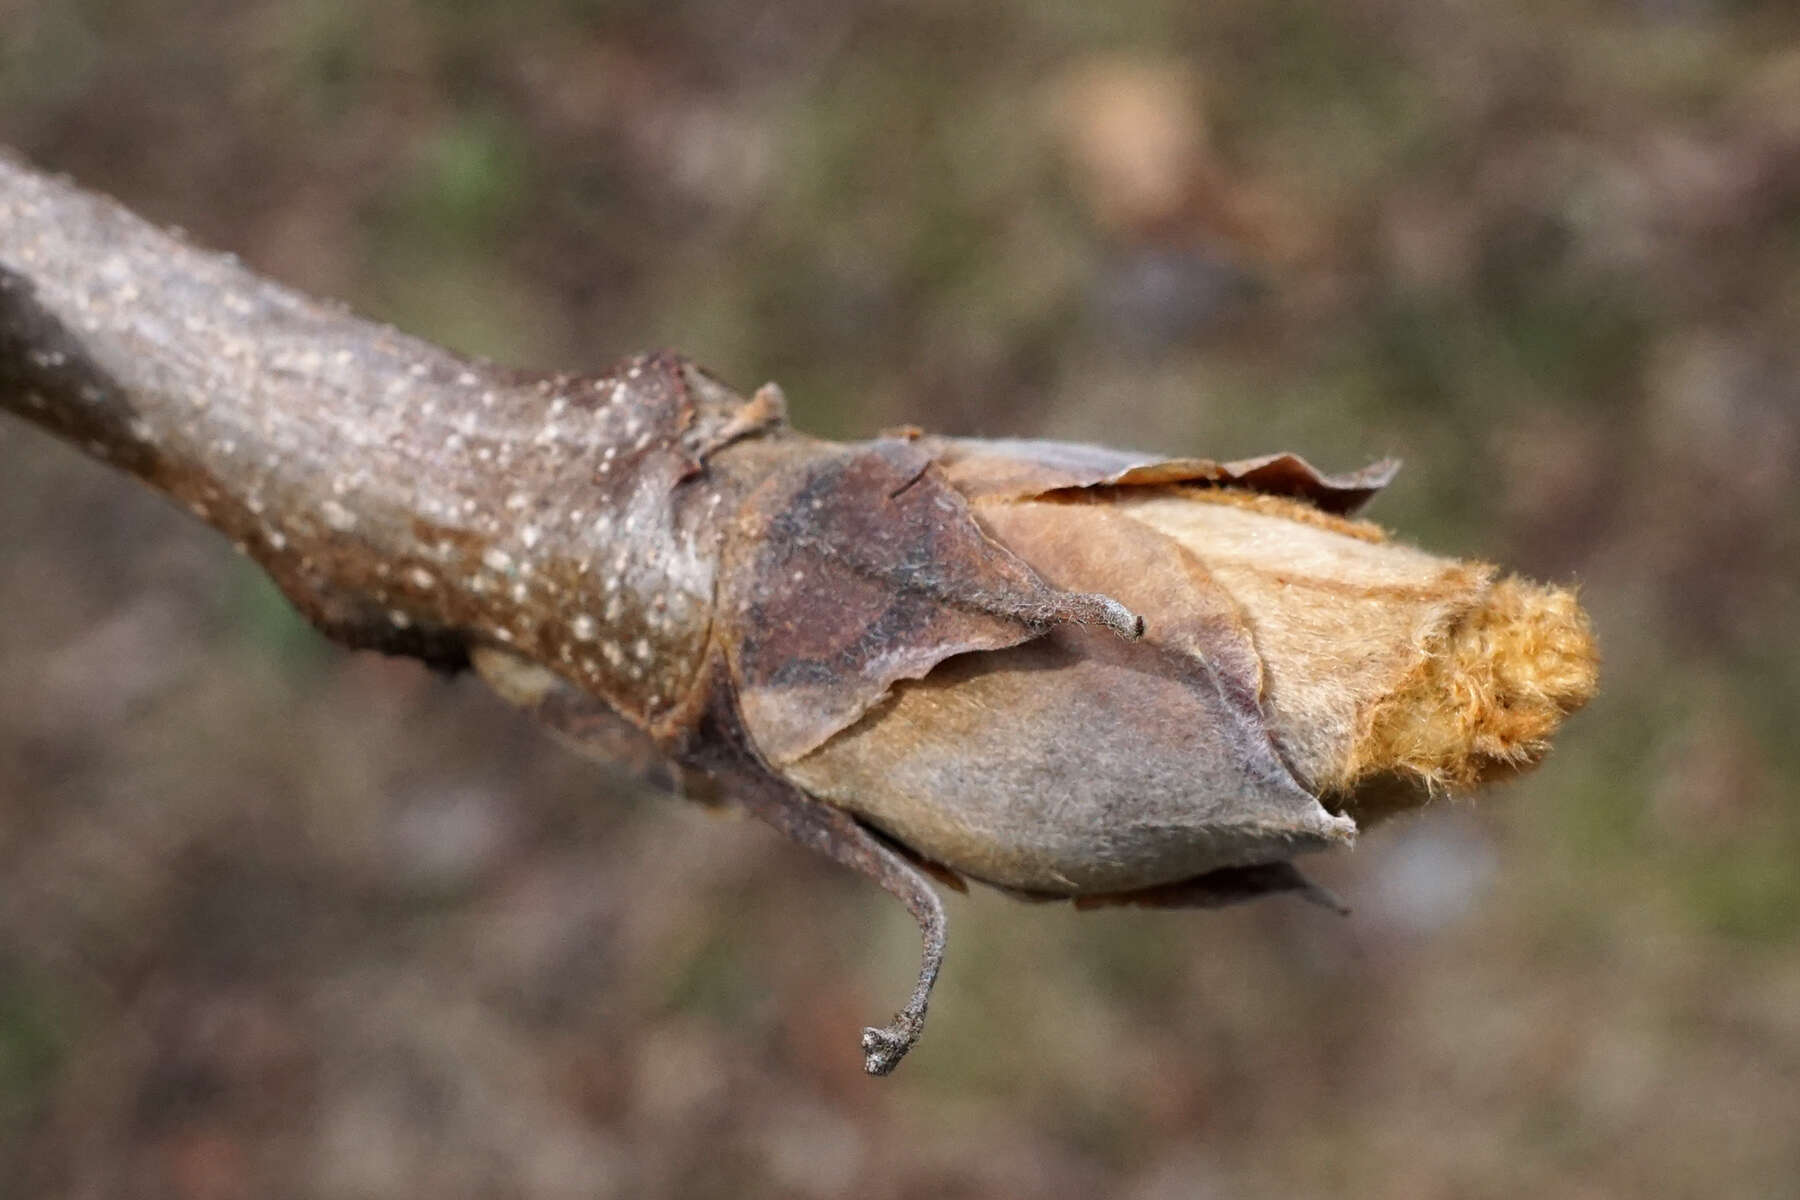 Image of shellbark hickory